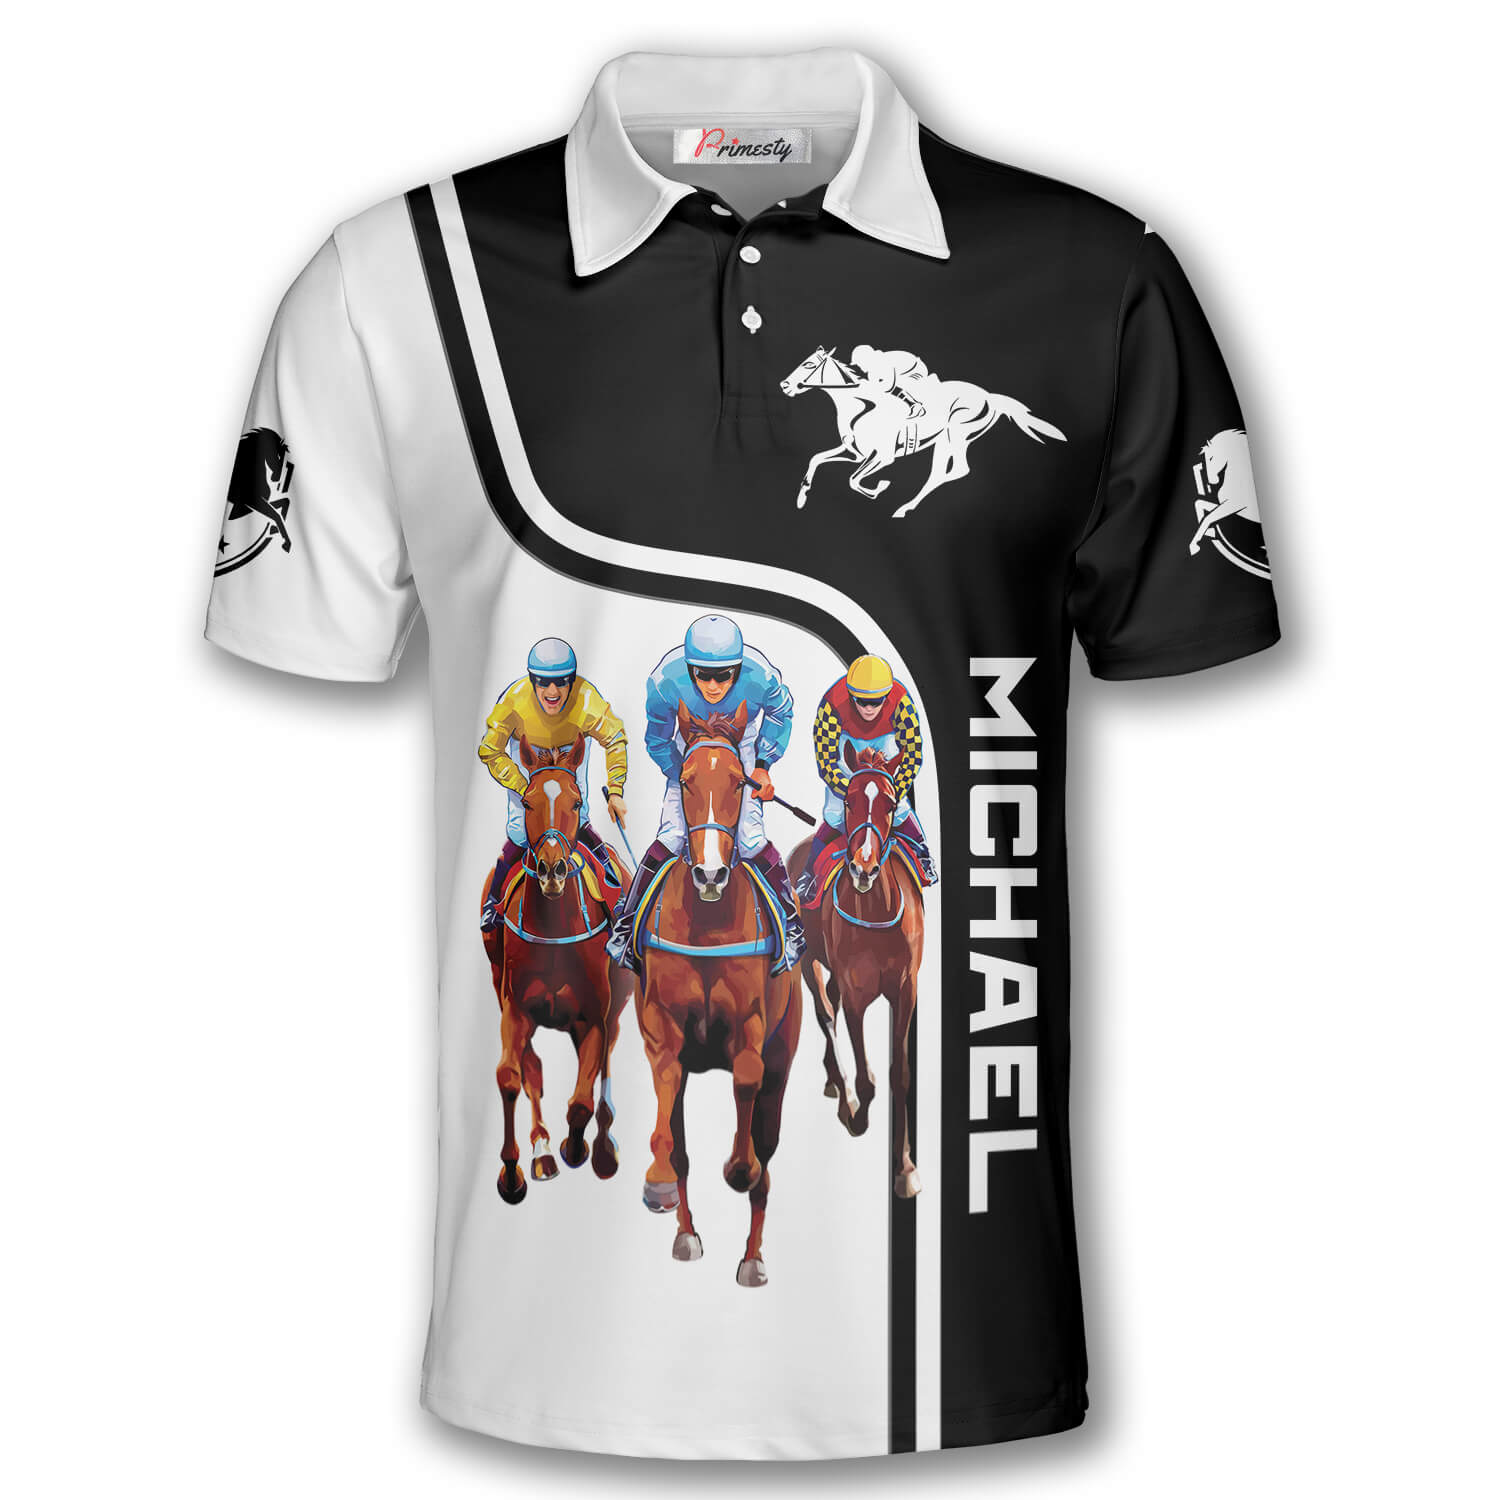 racing polo shirts